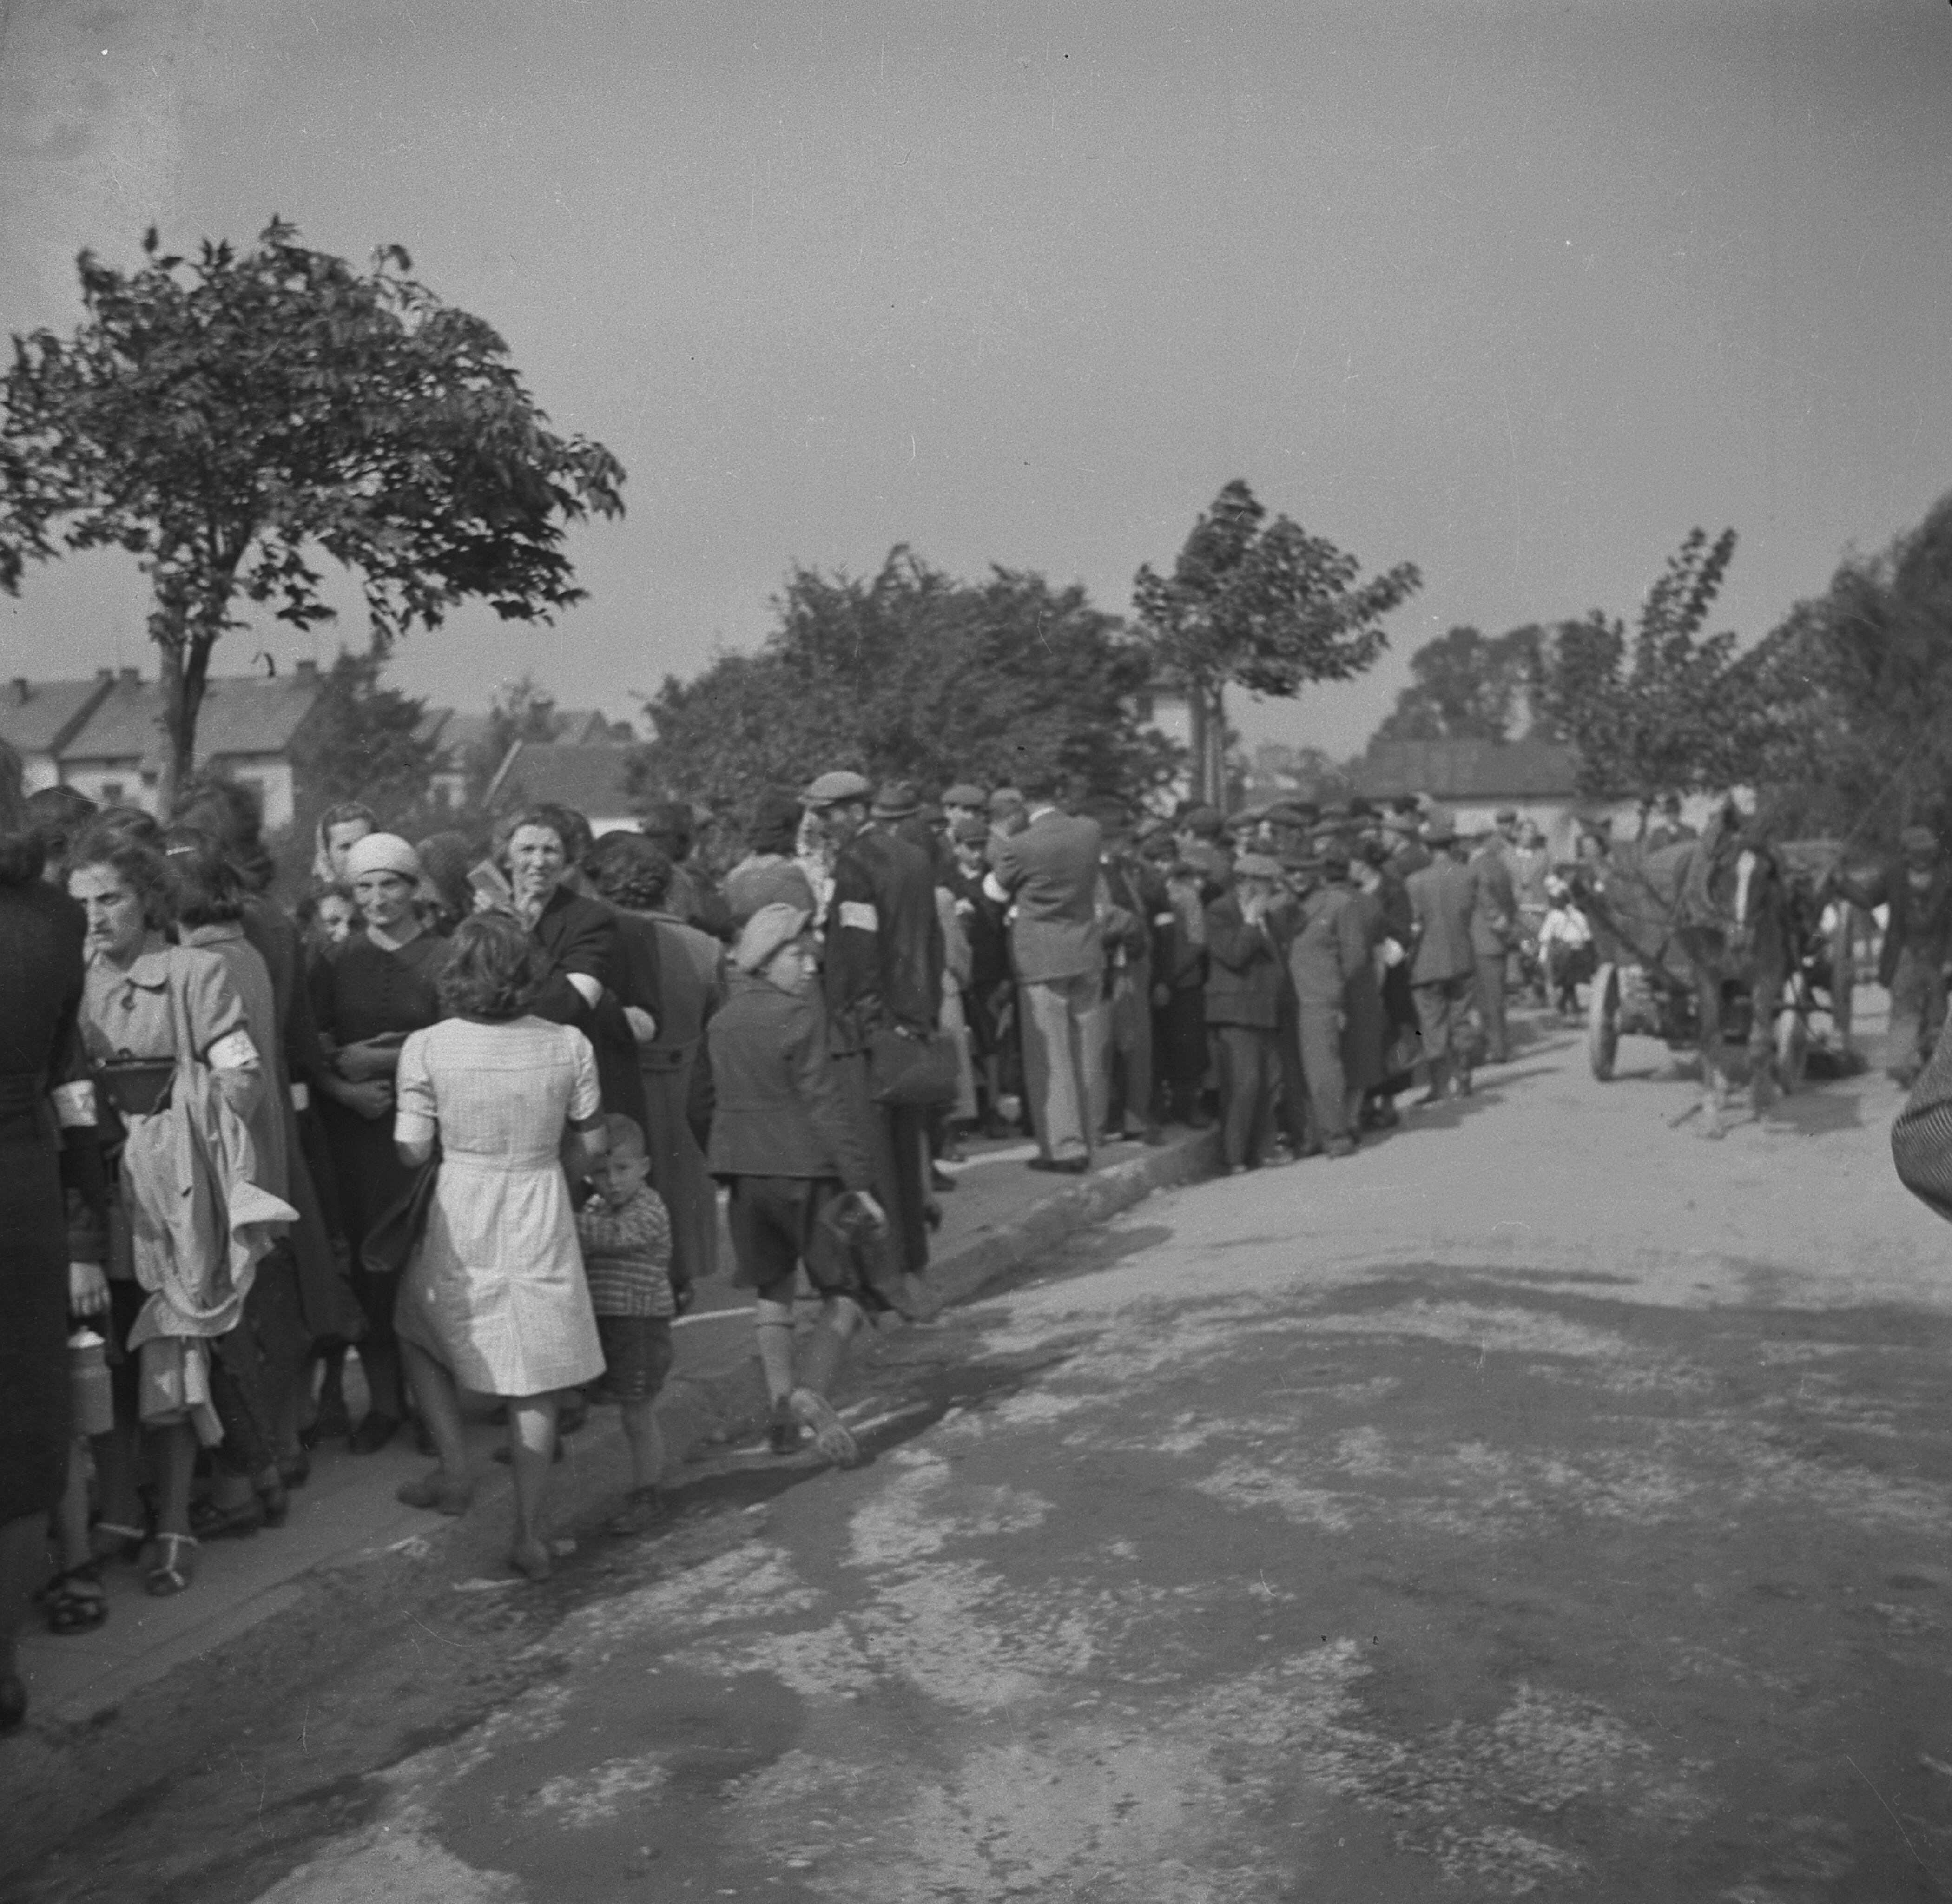 Soldados alemanes vigilan filas de judíos que hacen cola para entrar al centro de la ciudad, recoger racionamientos de comida o pasar algún tipo de registro por parte de las autoridades de la ocupación.